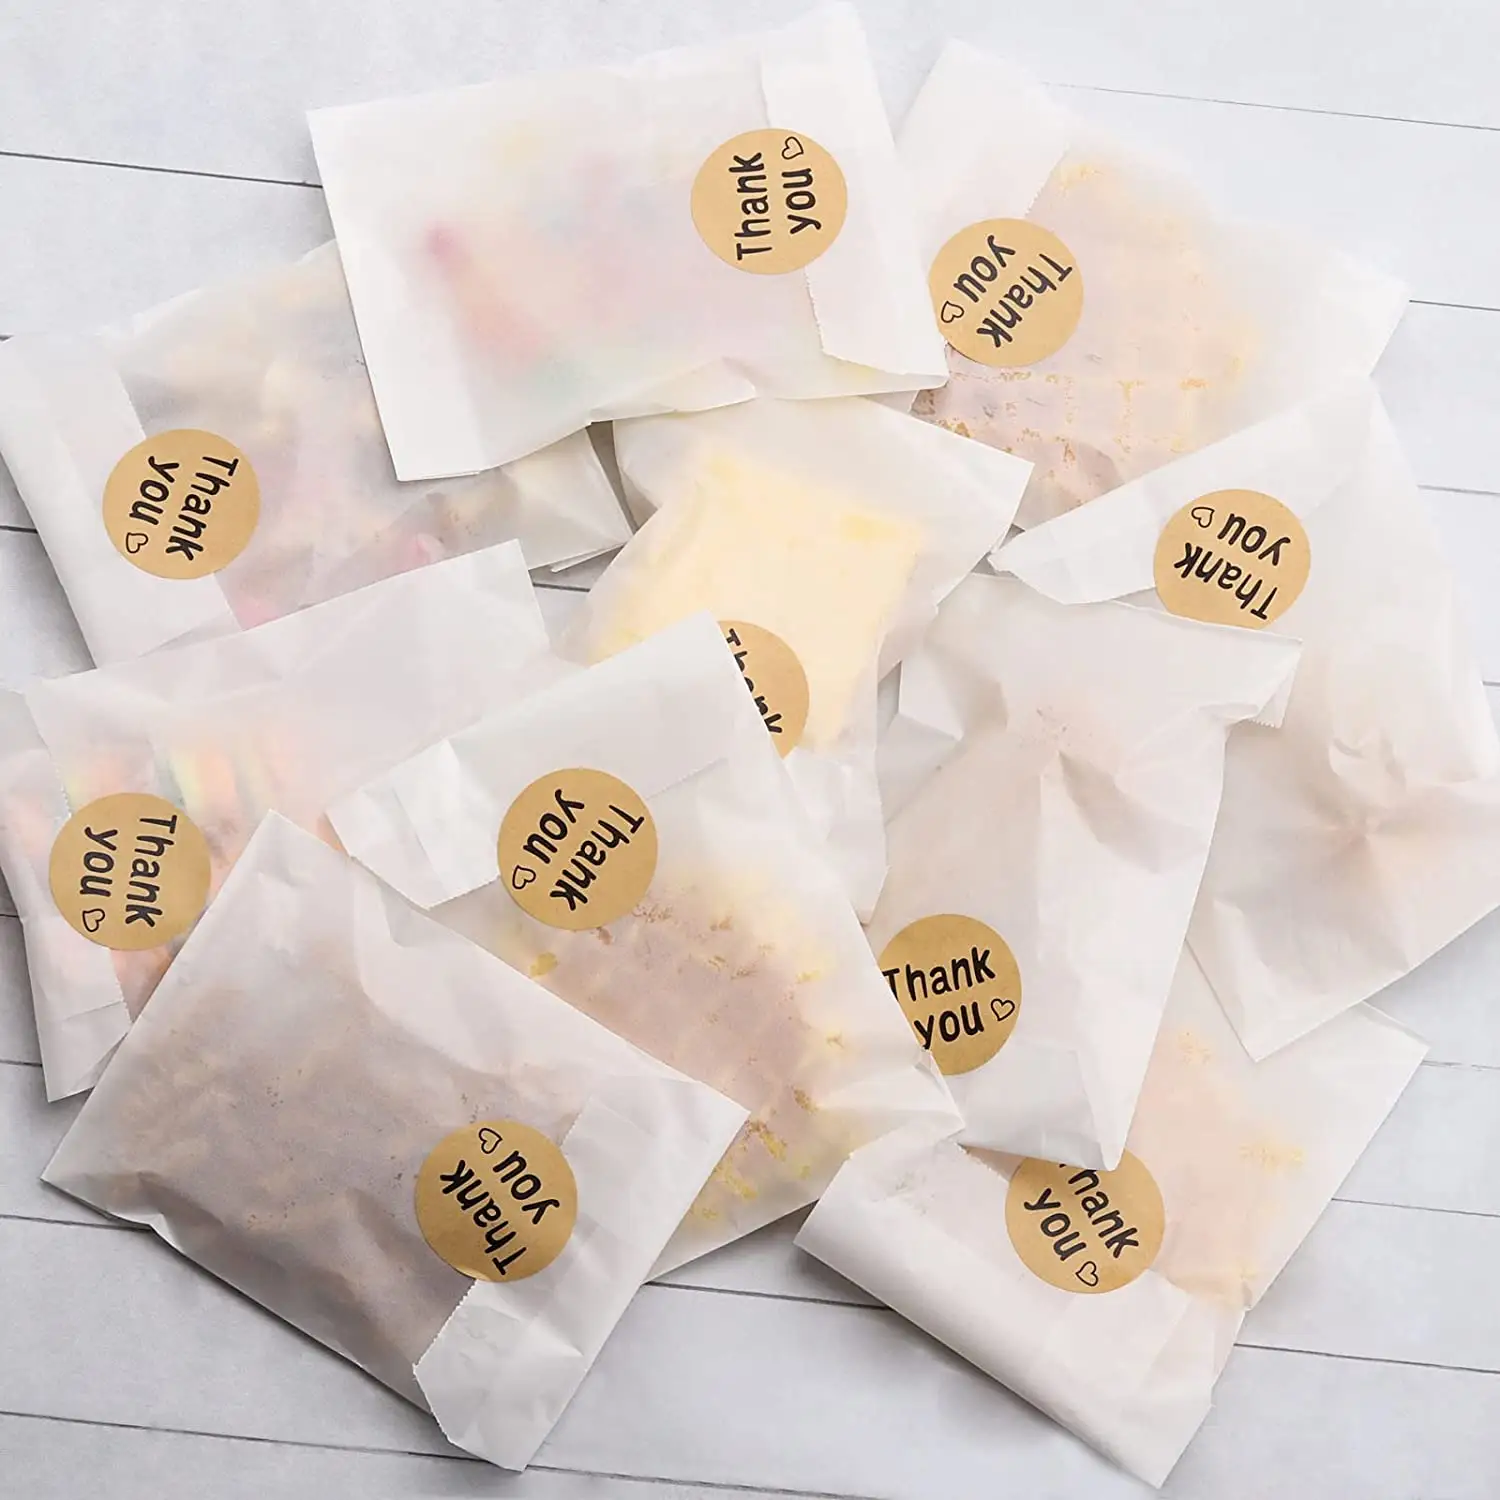 Sacchetti della spesa di sacchetti di carta cerata Glassine di imballaggio Kraft personalizzati per la borsa da imballaggio per la protezione degli alimenti